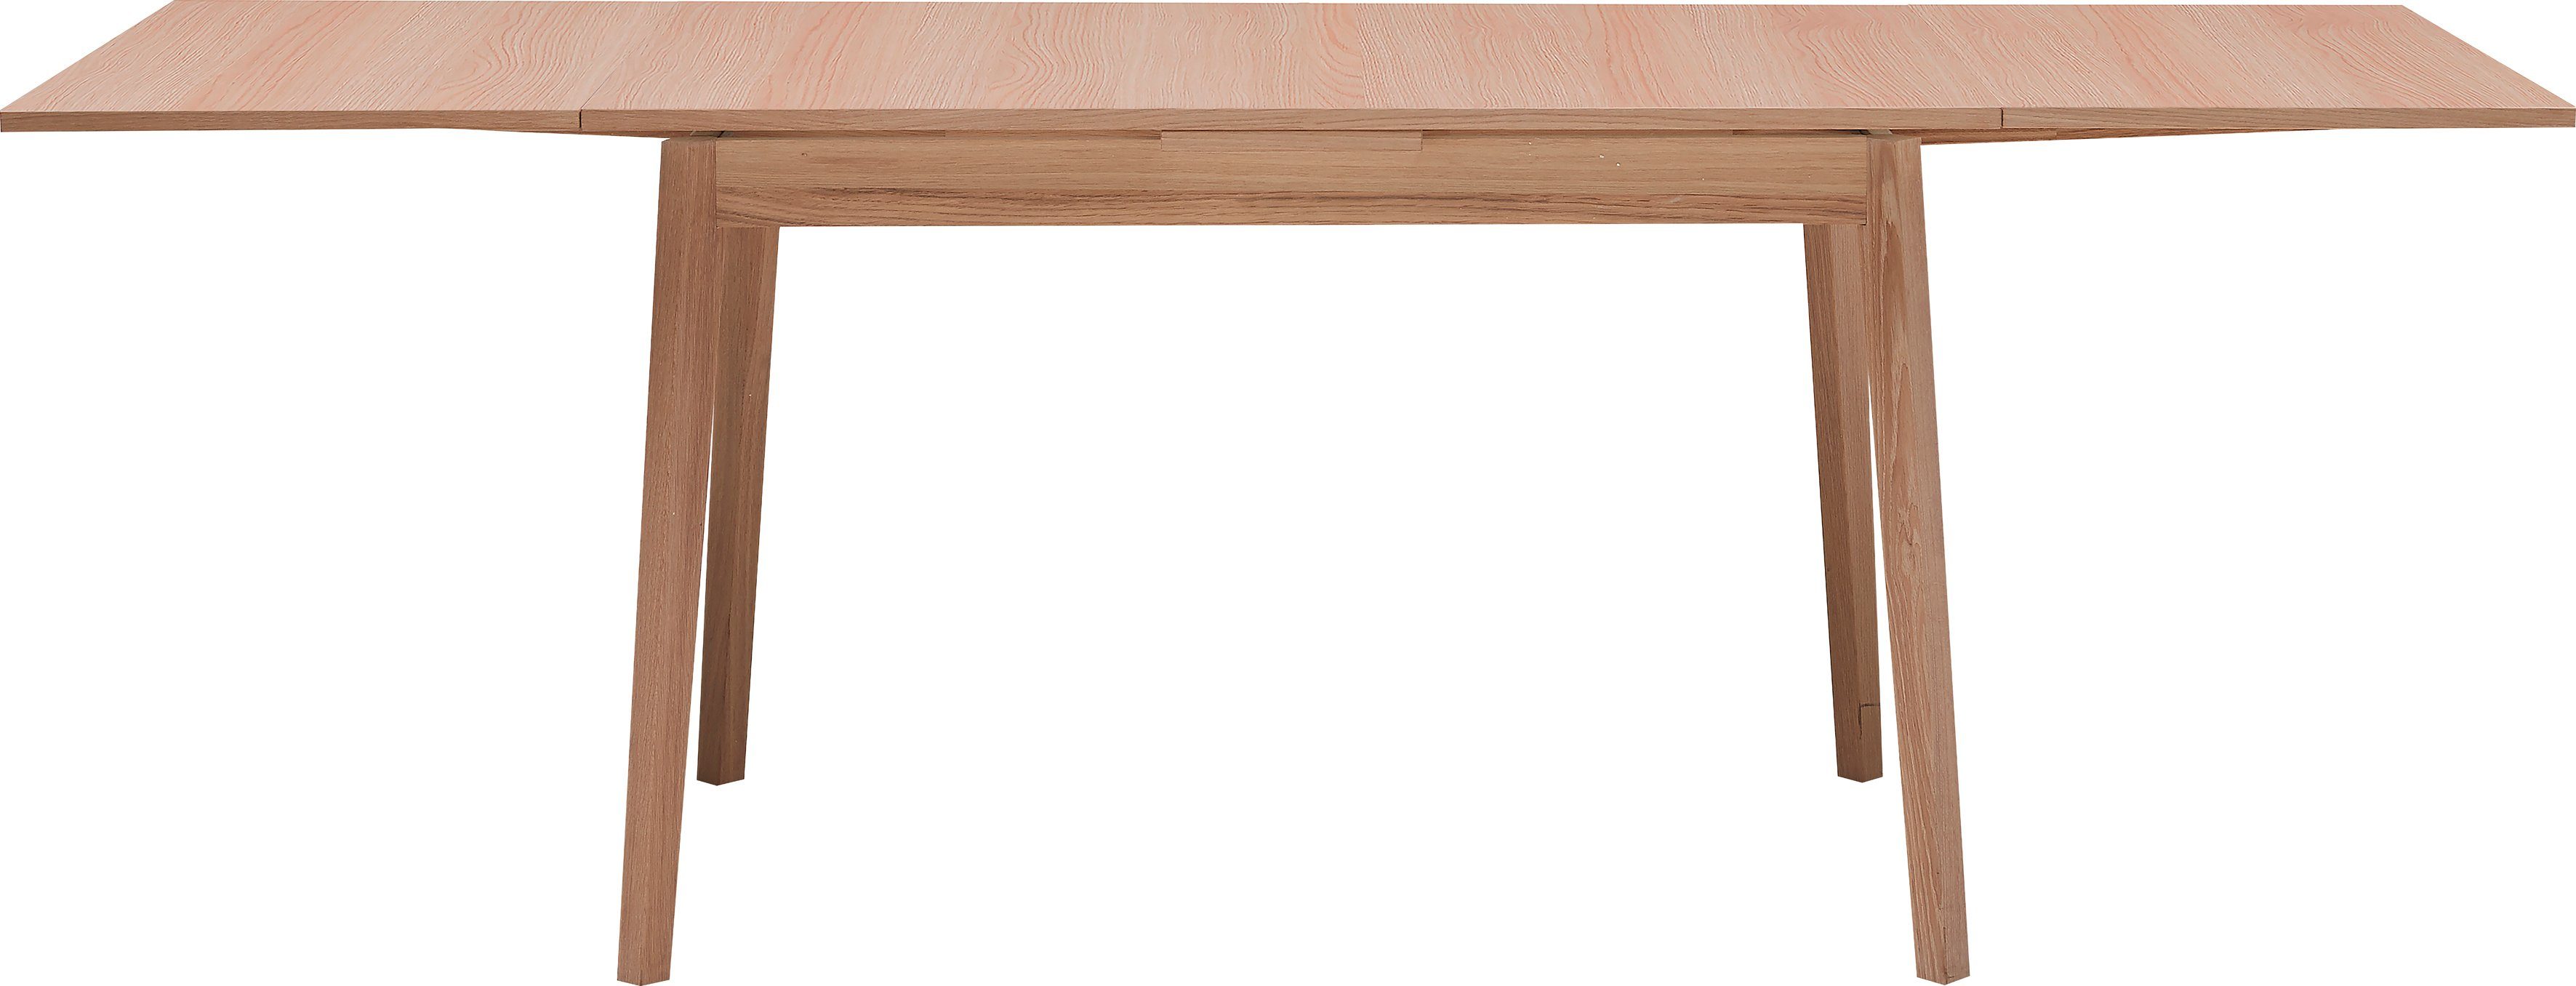 Hammel Furniture Esstisch Basic by Melamin cm, Single, in Eichefarben Gestell Hammel 120(220)x80 Massivholz und Tischplatte aus